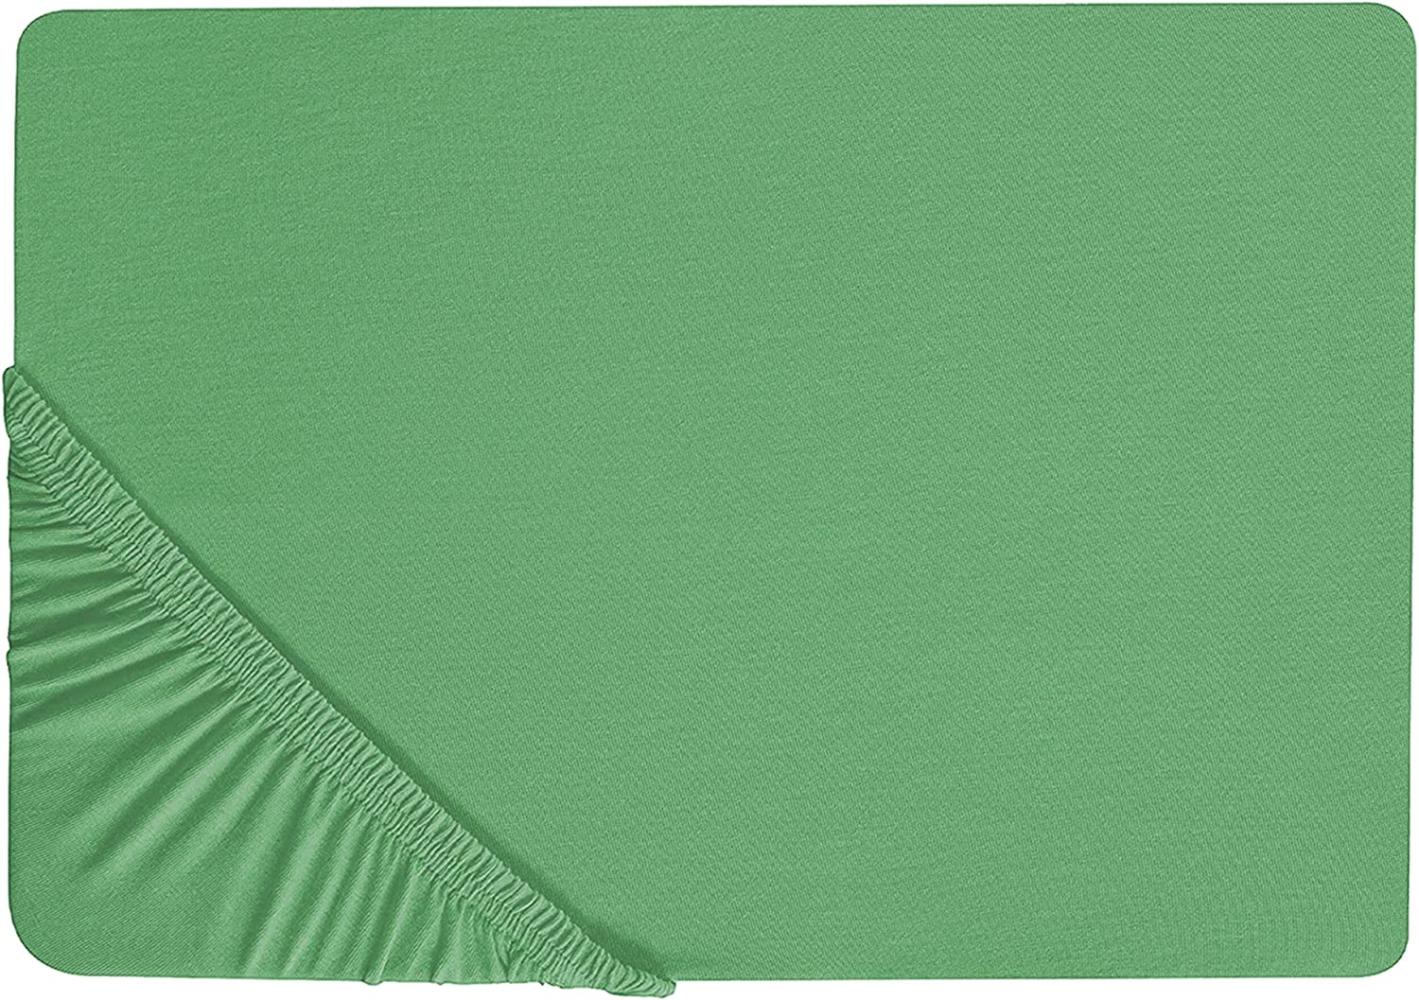 Spannbettlaken Baumwolle grün 160 x 200 cm JANBU Bild 1